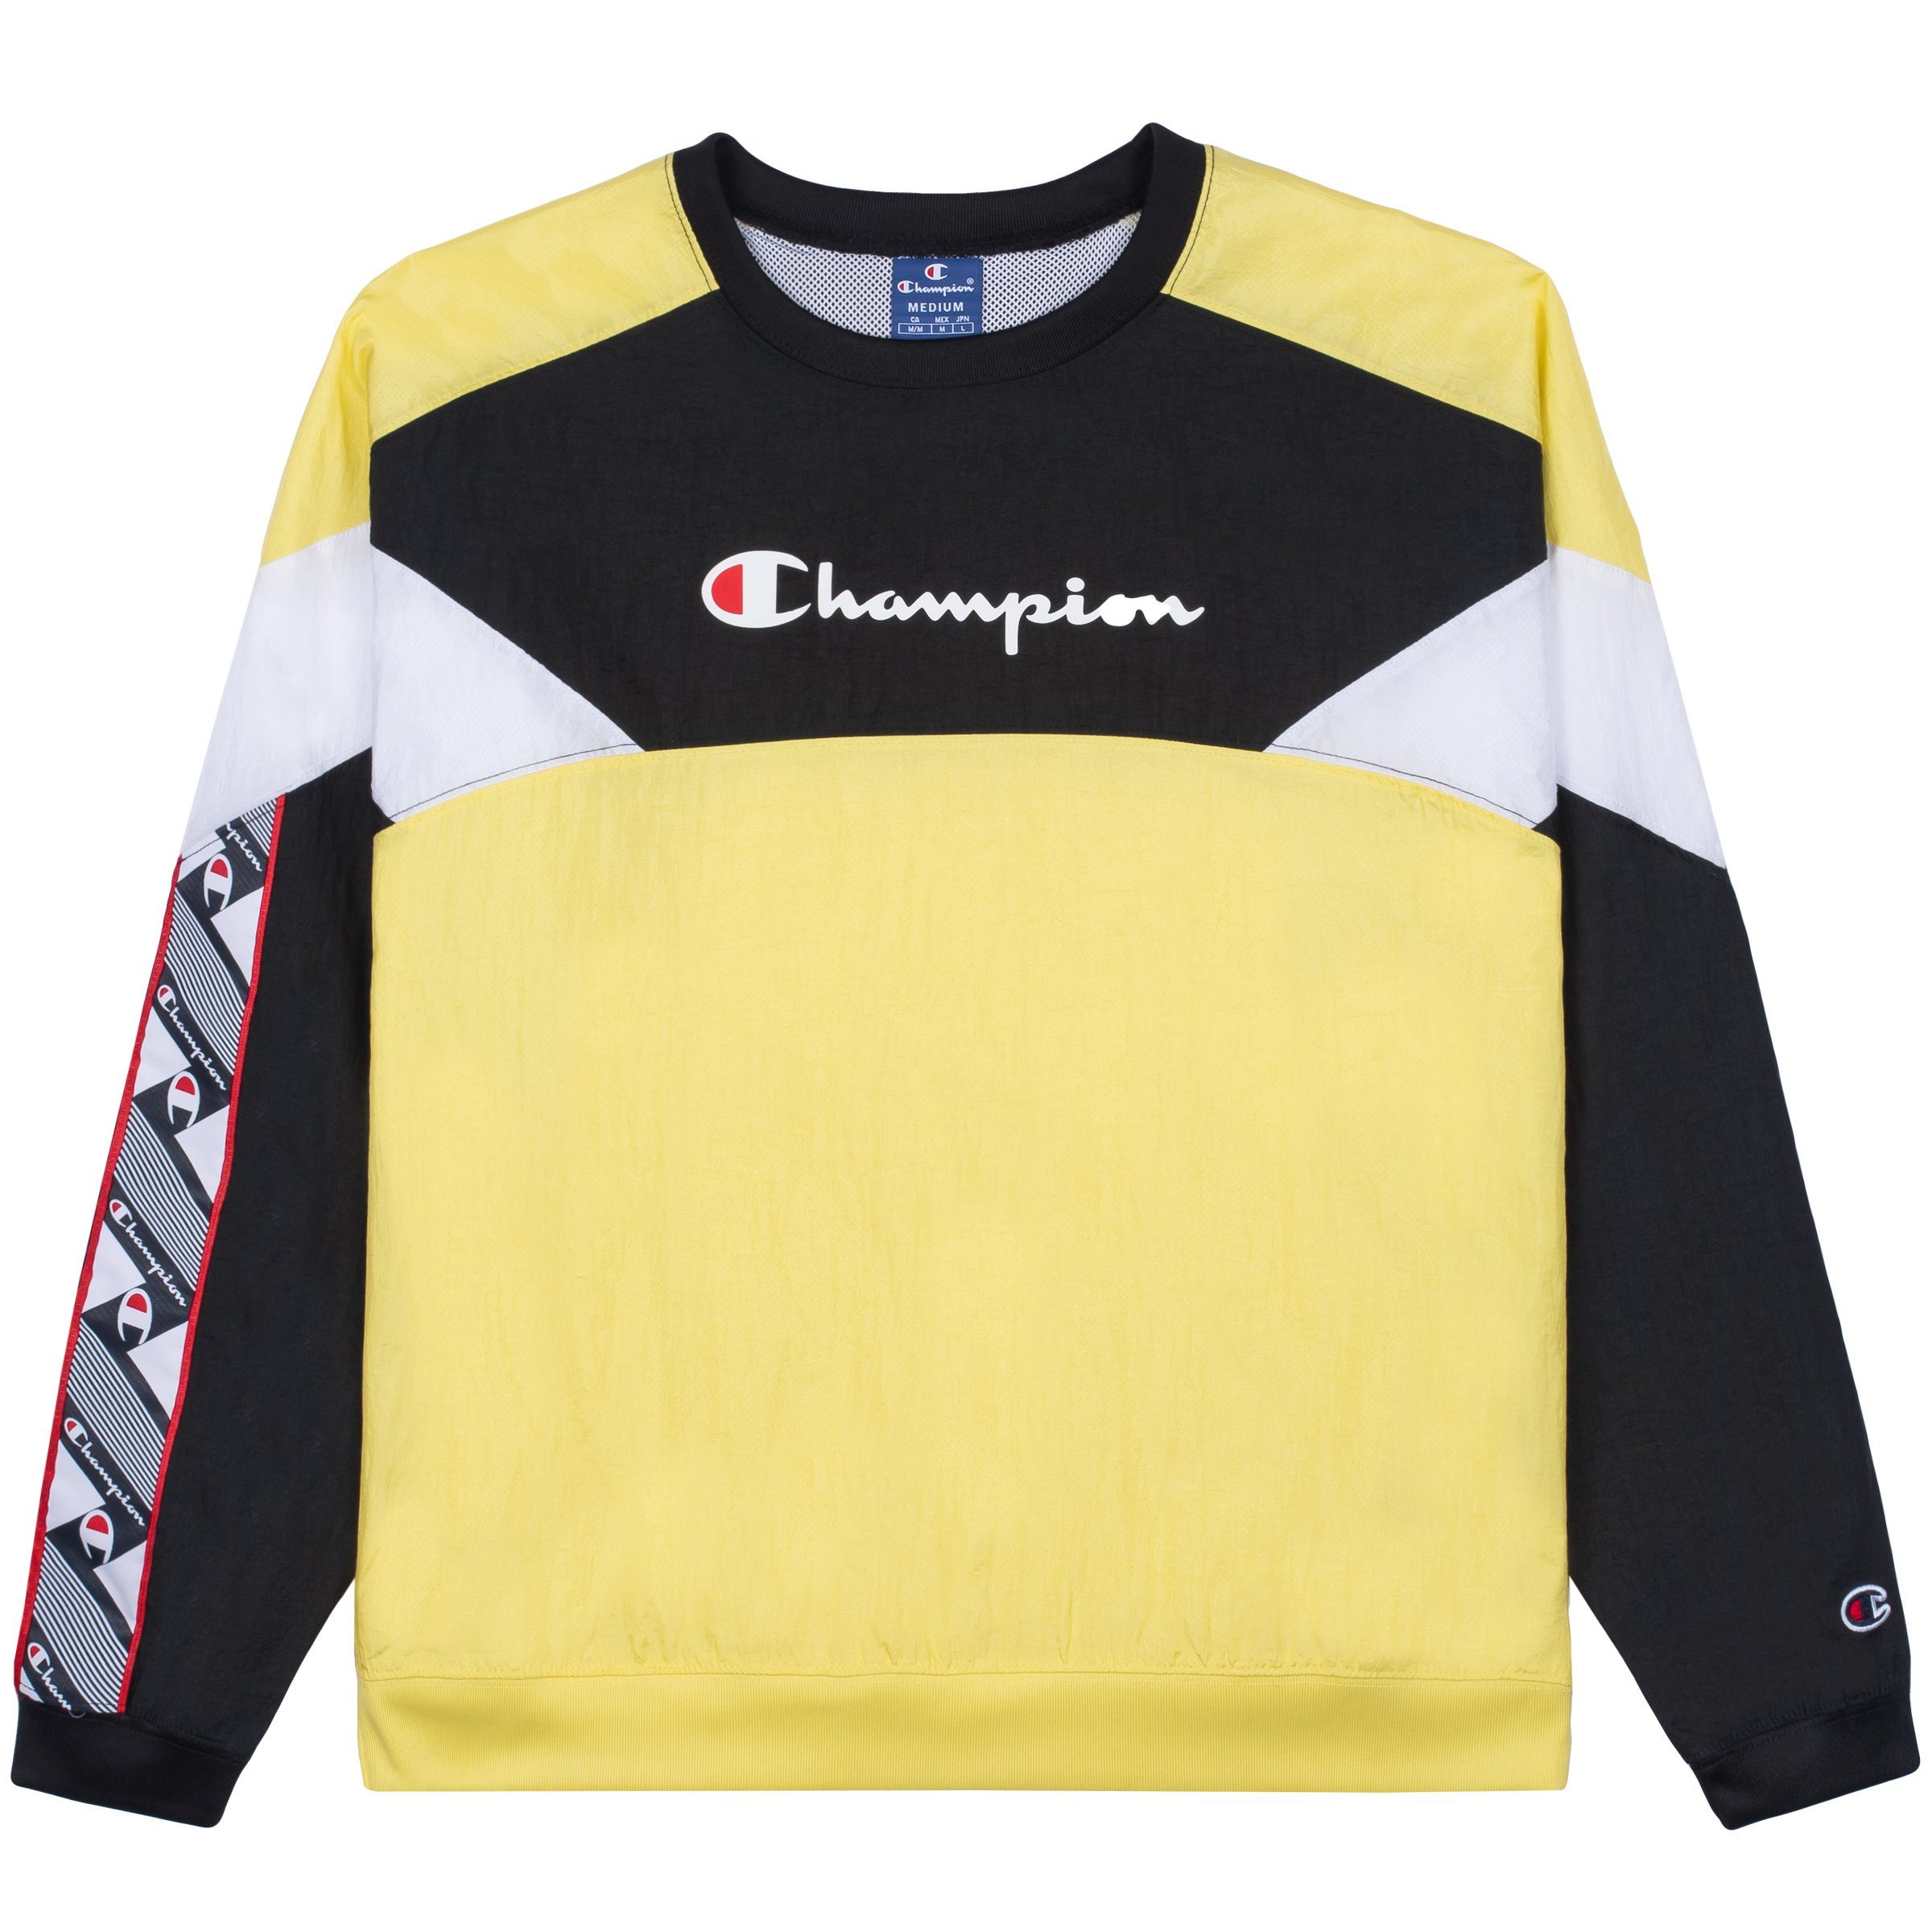 Champion Sweatshirt Champion Damen Sweatshirt Crewneck 112773 gelb (lml)/schwarz (nbk)/weiß (wht)